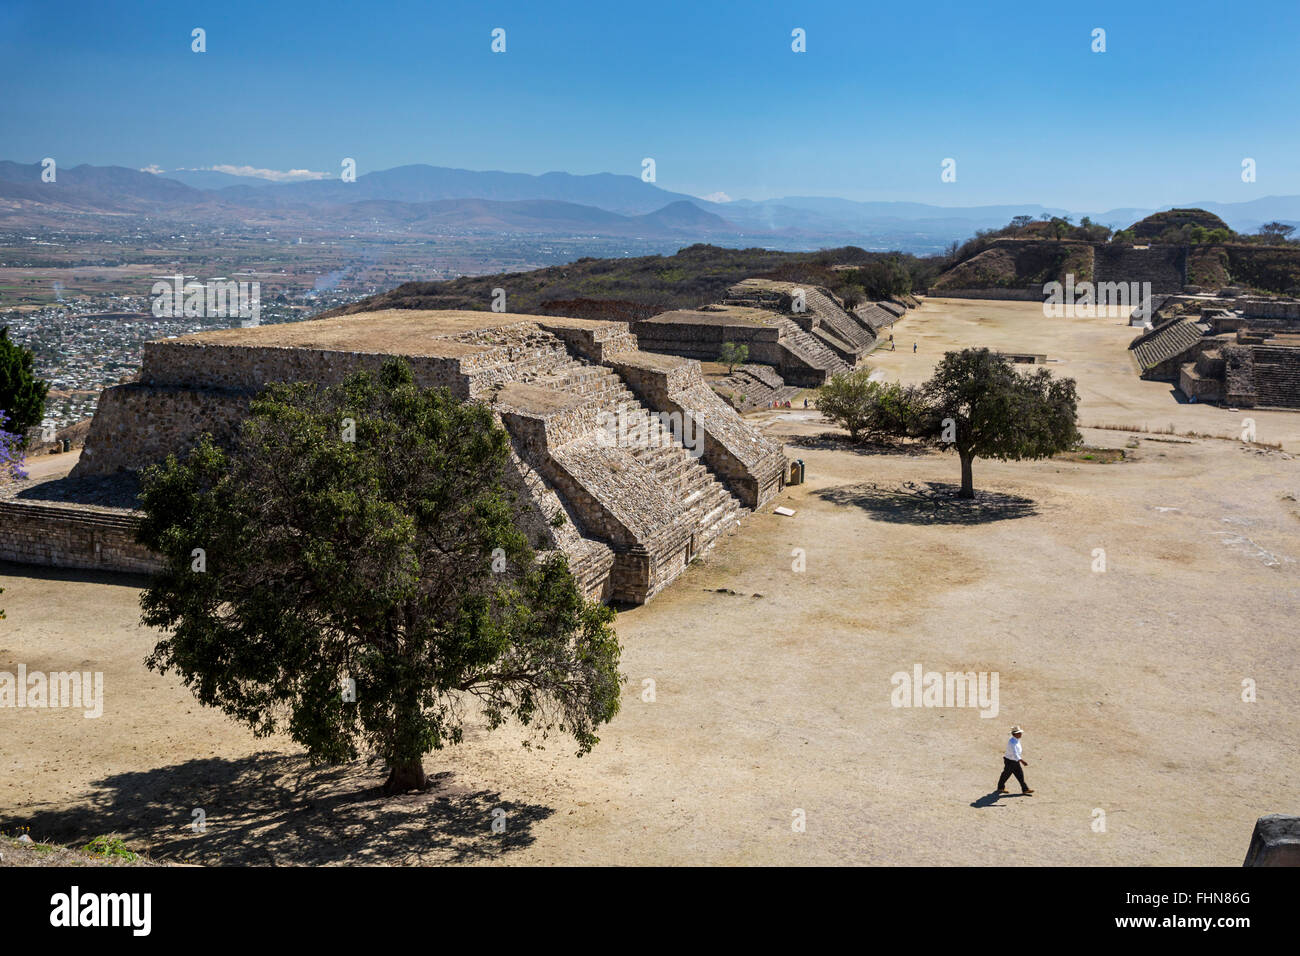 Oaxaca, Mexico - Monte Albán, a major pre-Columbian archaeological site in southern Mexico. Stock Photo